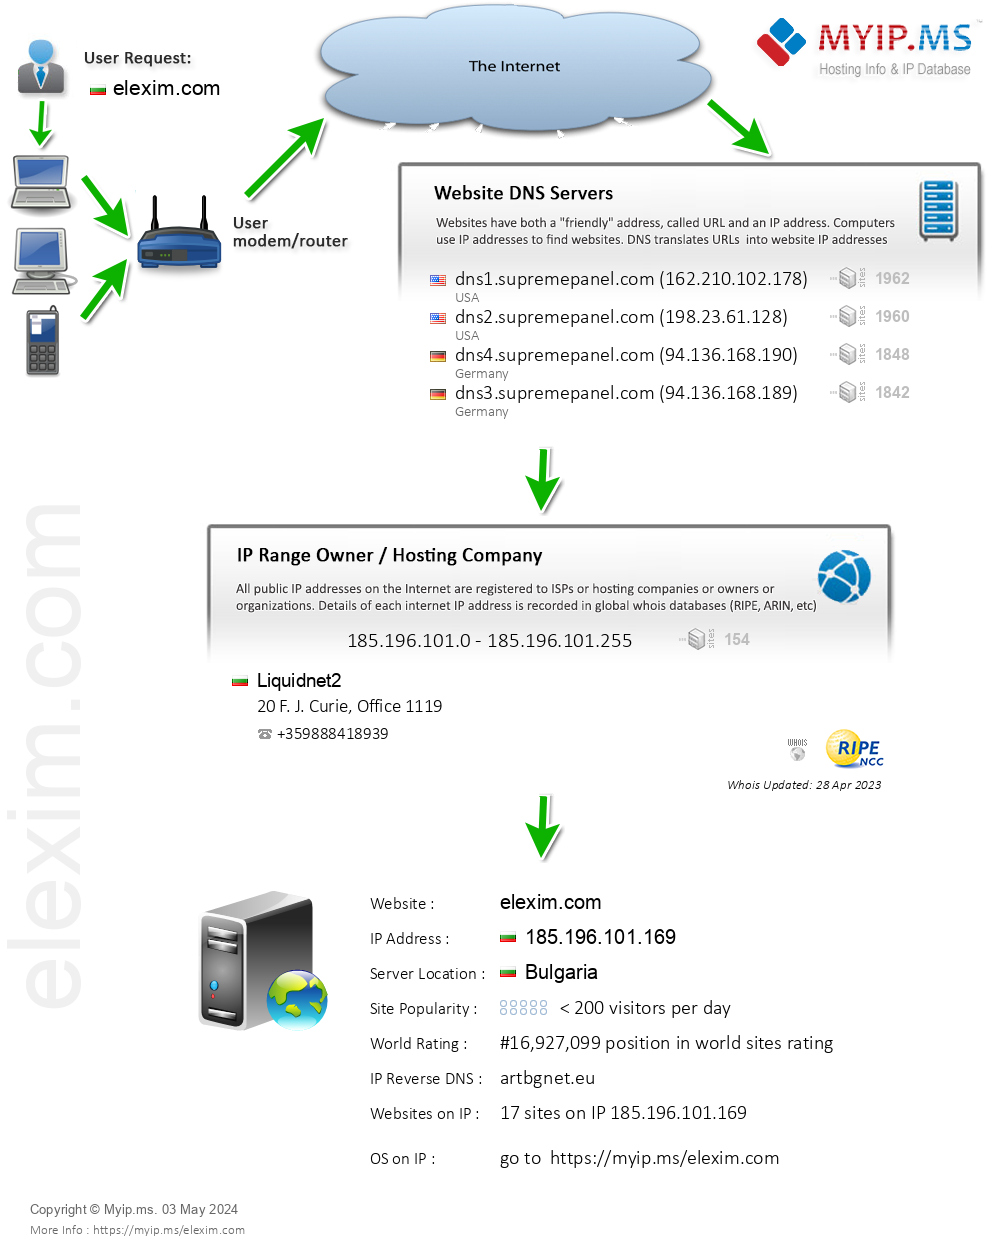 Elexim.com - Website Hosting Visual IP Diagram